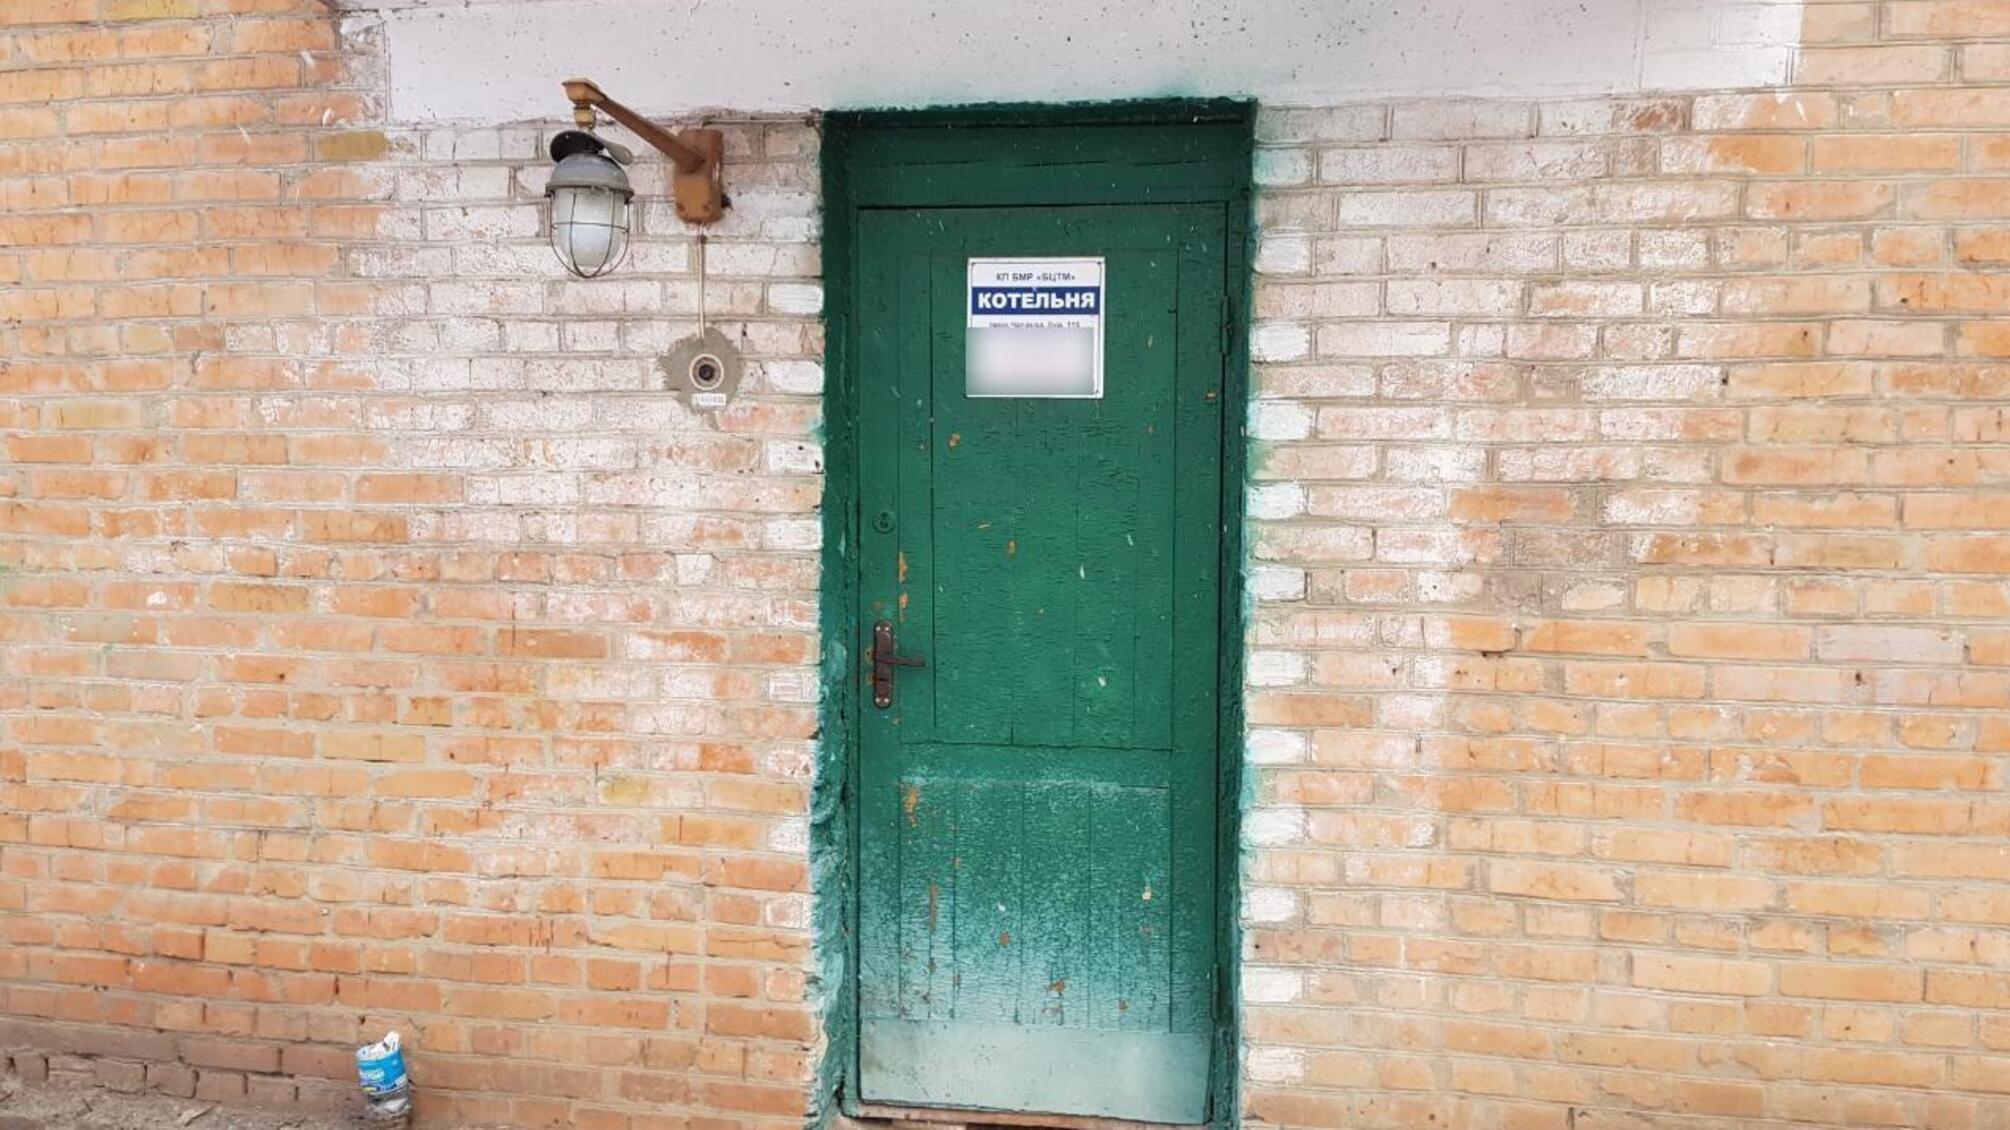 Катував 5 годин у шкільній котельні – на Київщині чоловік вибивав з жінки зізнання у зраді (ФОТО)